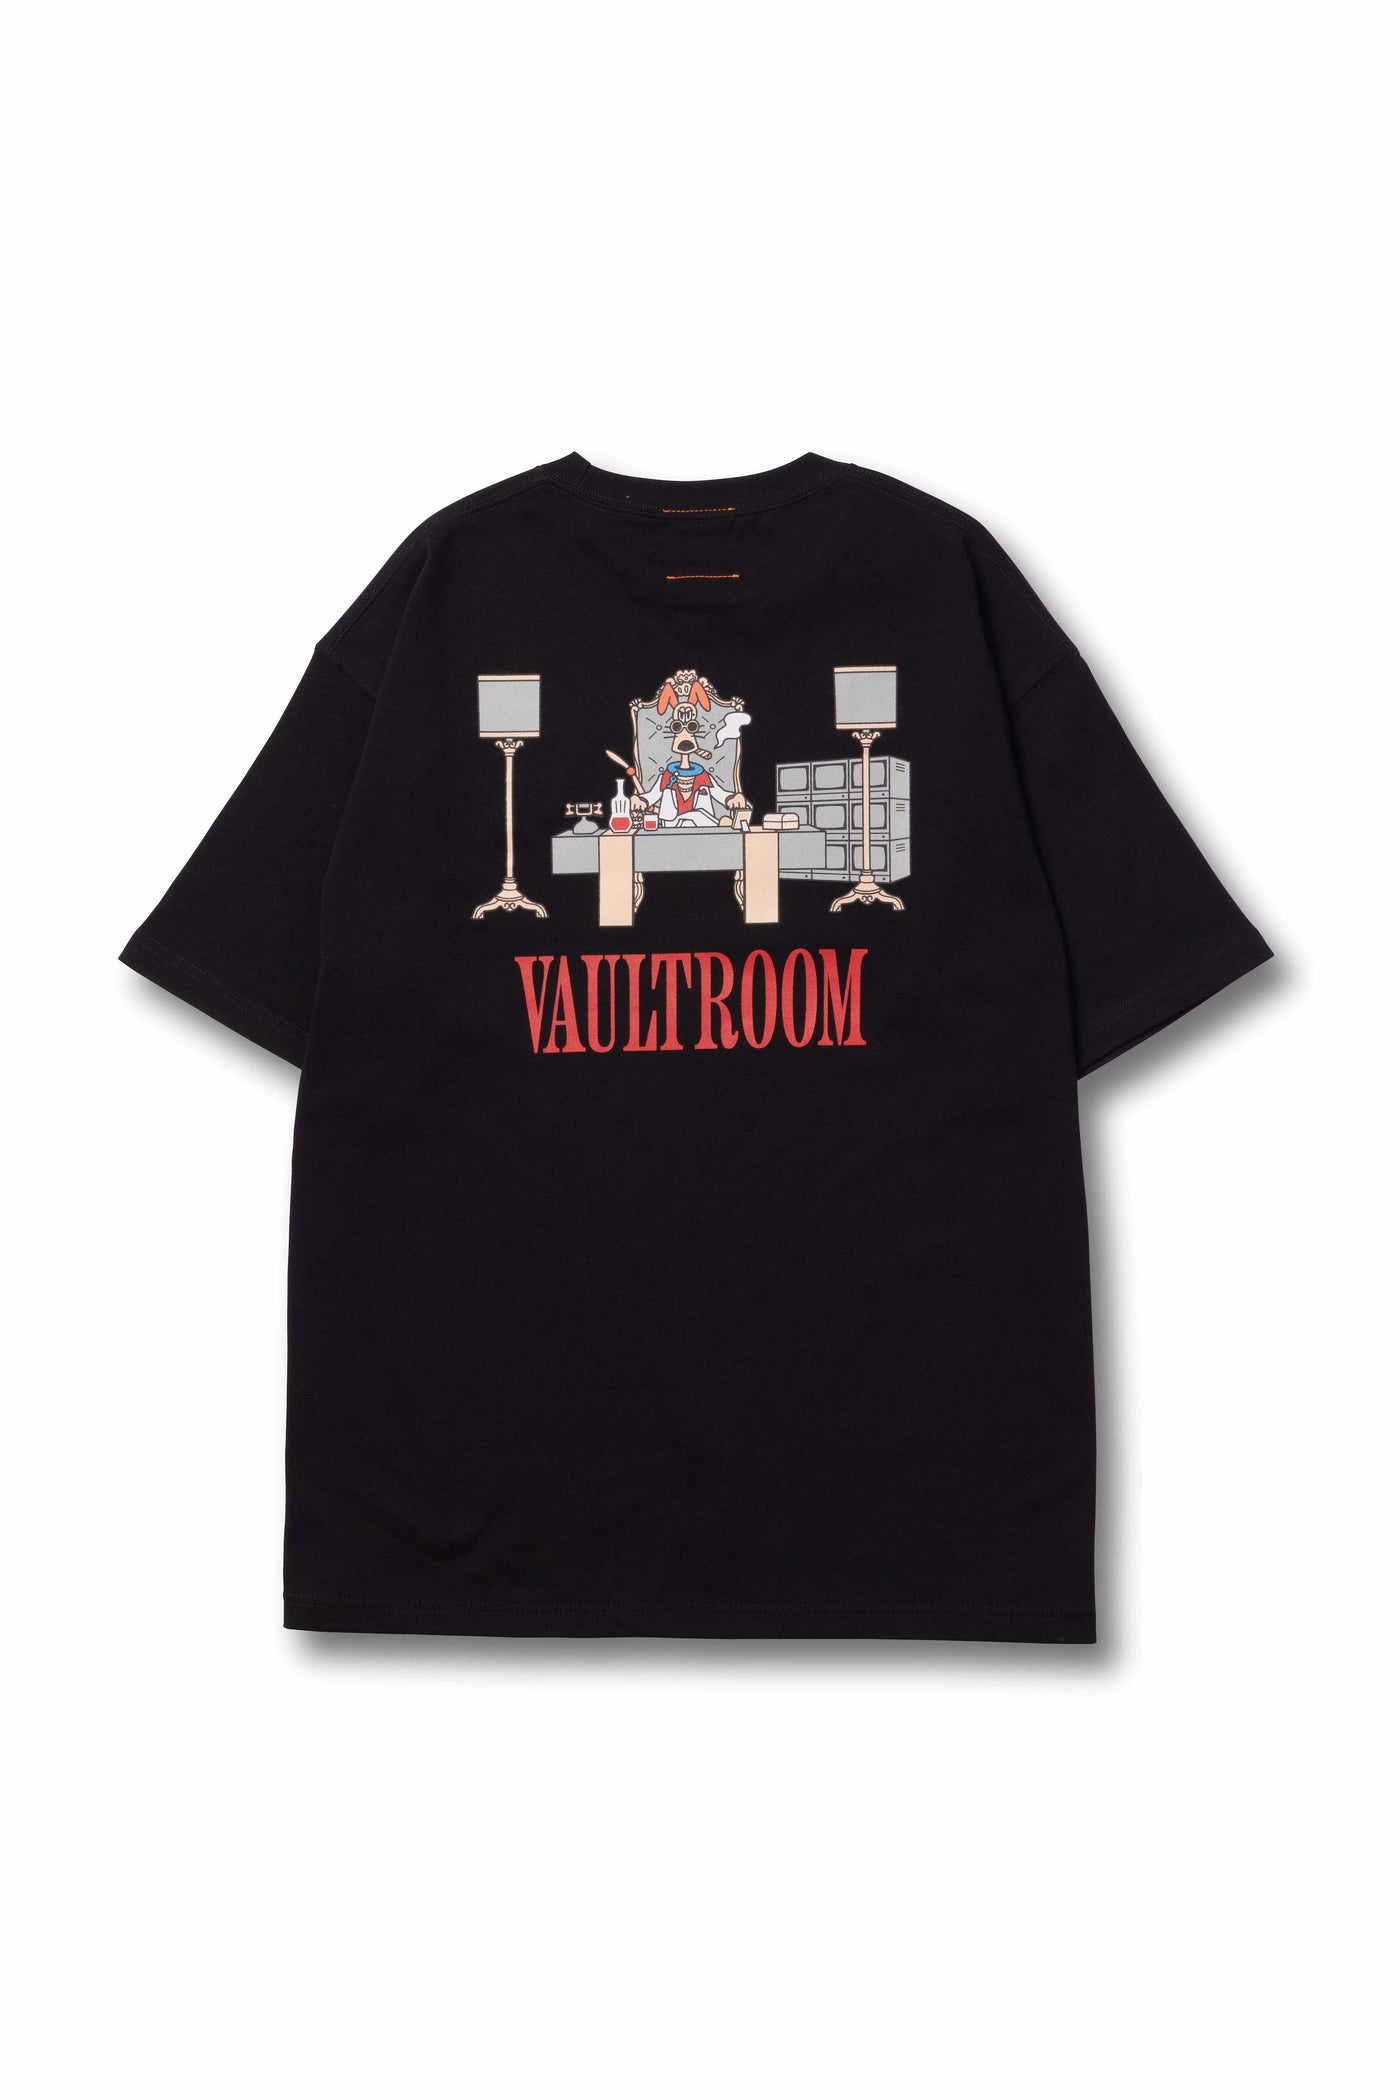 vaultroom HIDEOUT OFFICE TEE XL | hartwellspremium.com